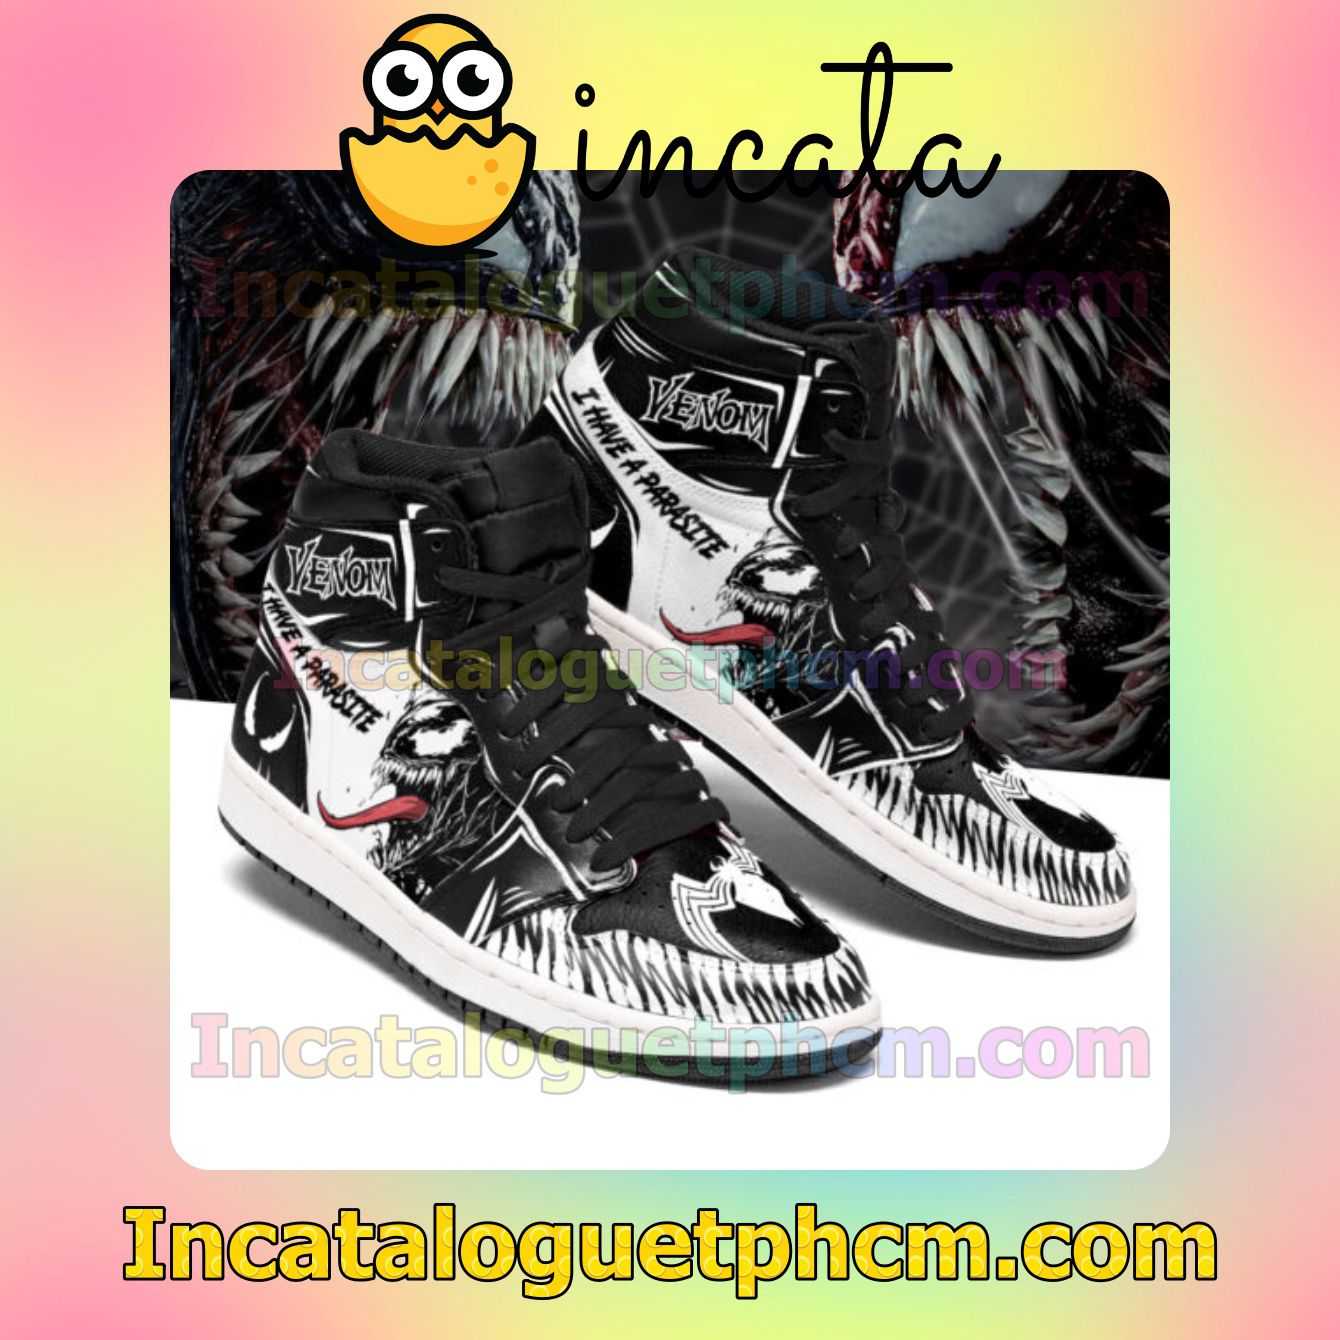 Venom I have a Parasite Air Jordan Black Air Jordan 1 Inspired Shoes